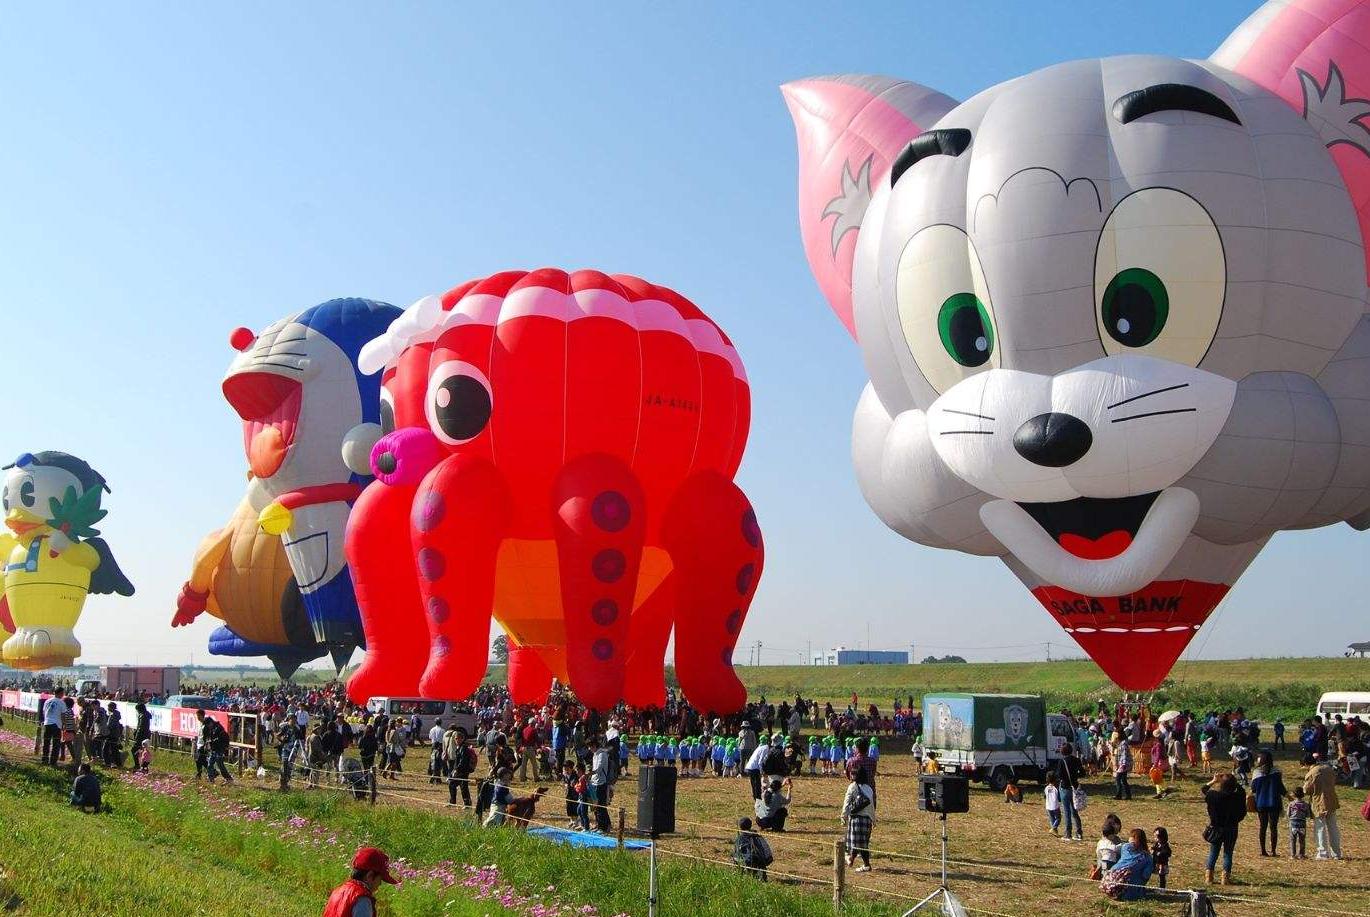 大型热气球活动，热气球租赁，热气球|资源-元素谷(OSOGOO)